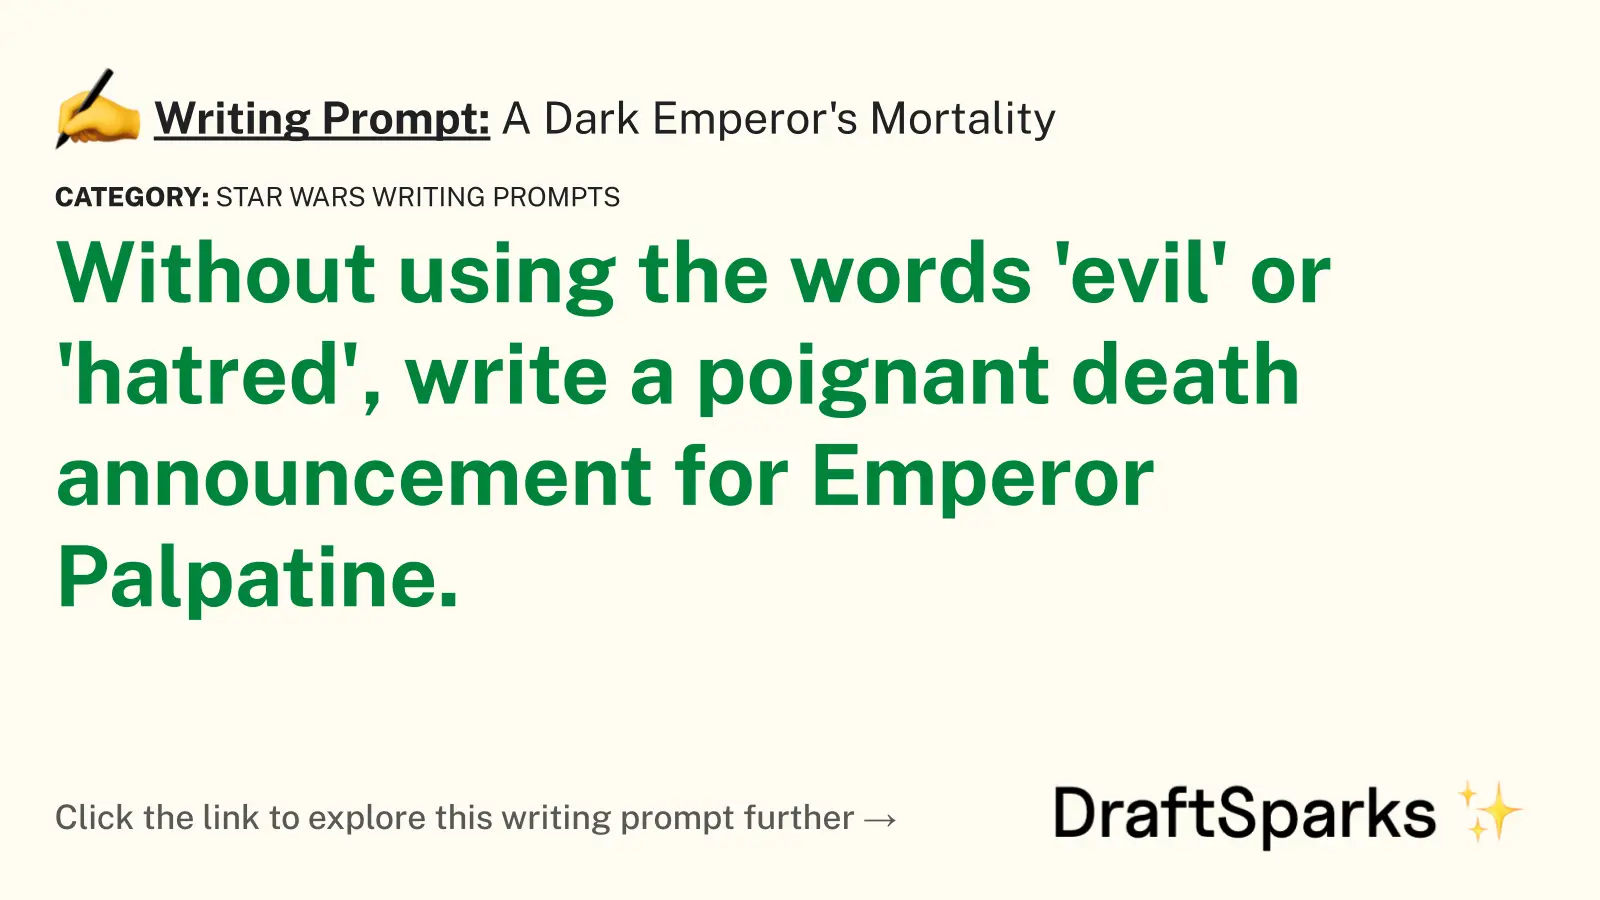 A Dark Emperor’s Mortality